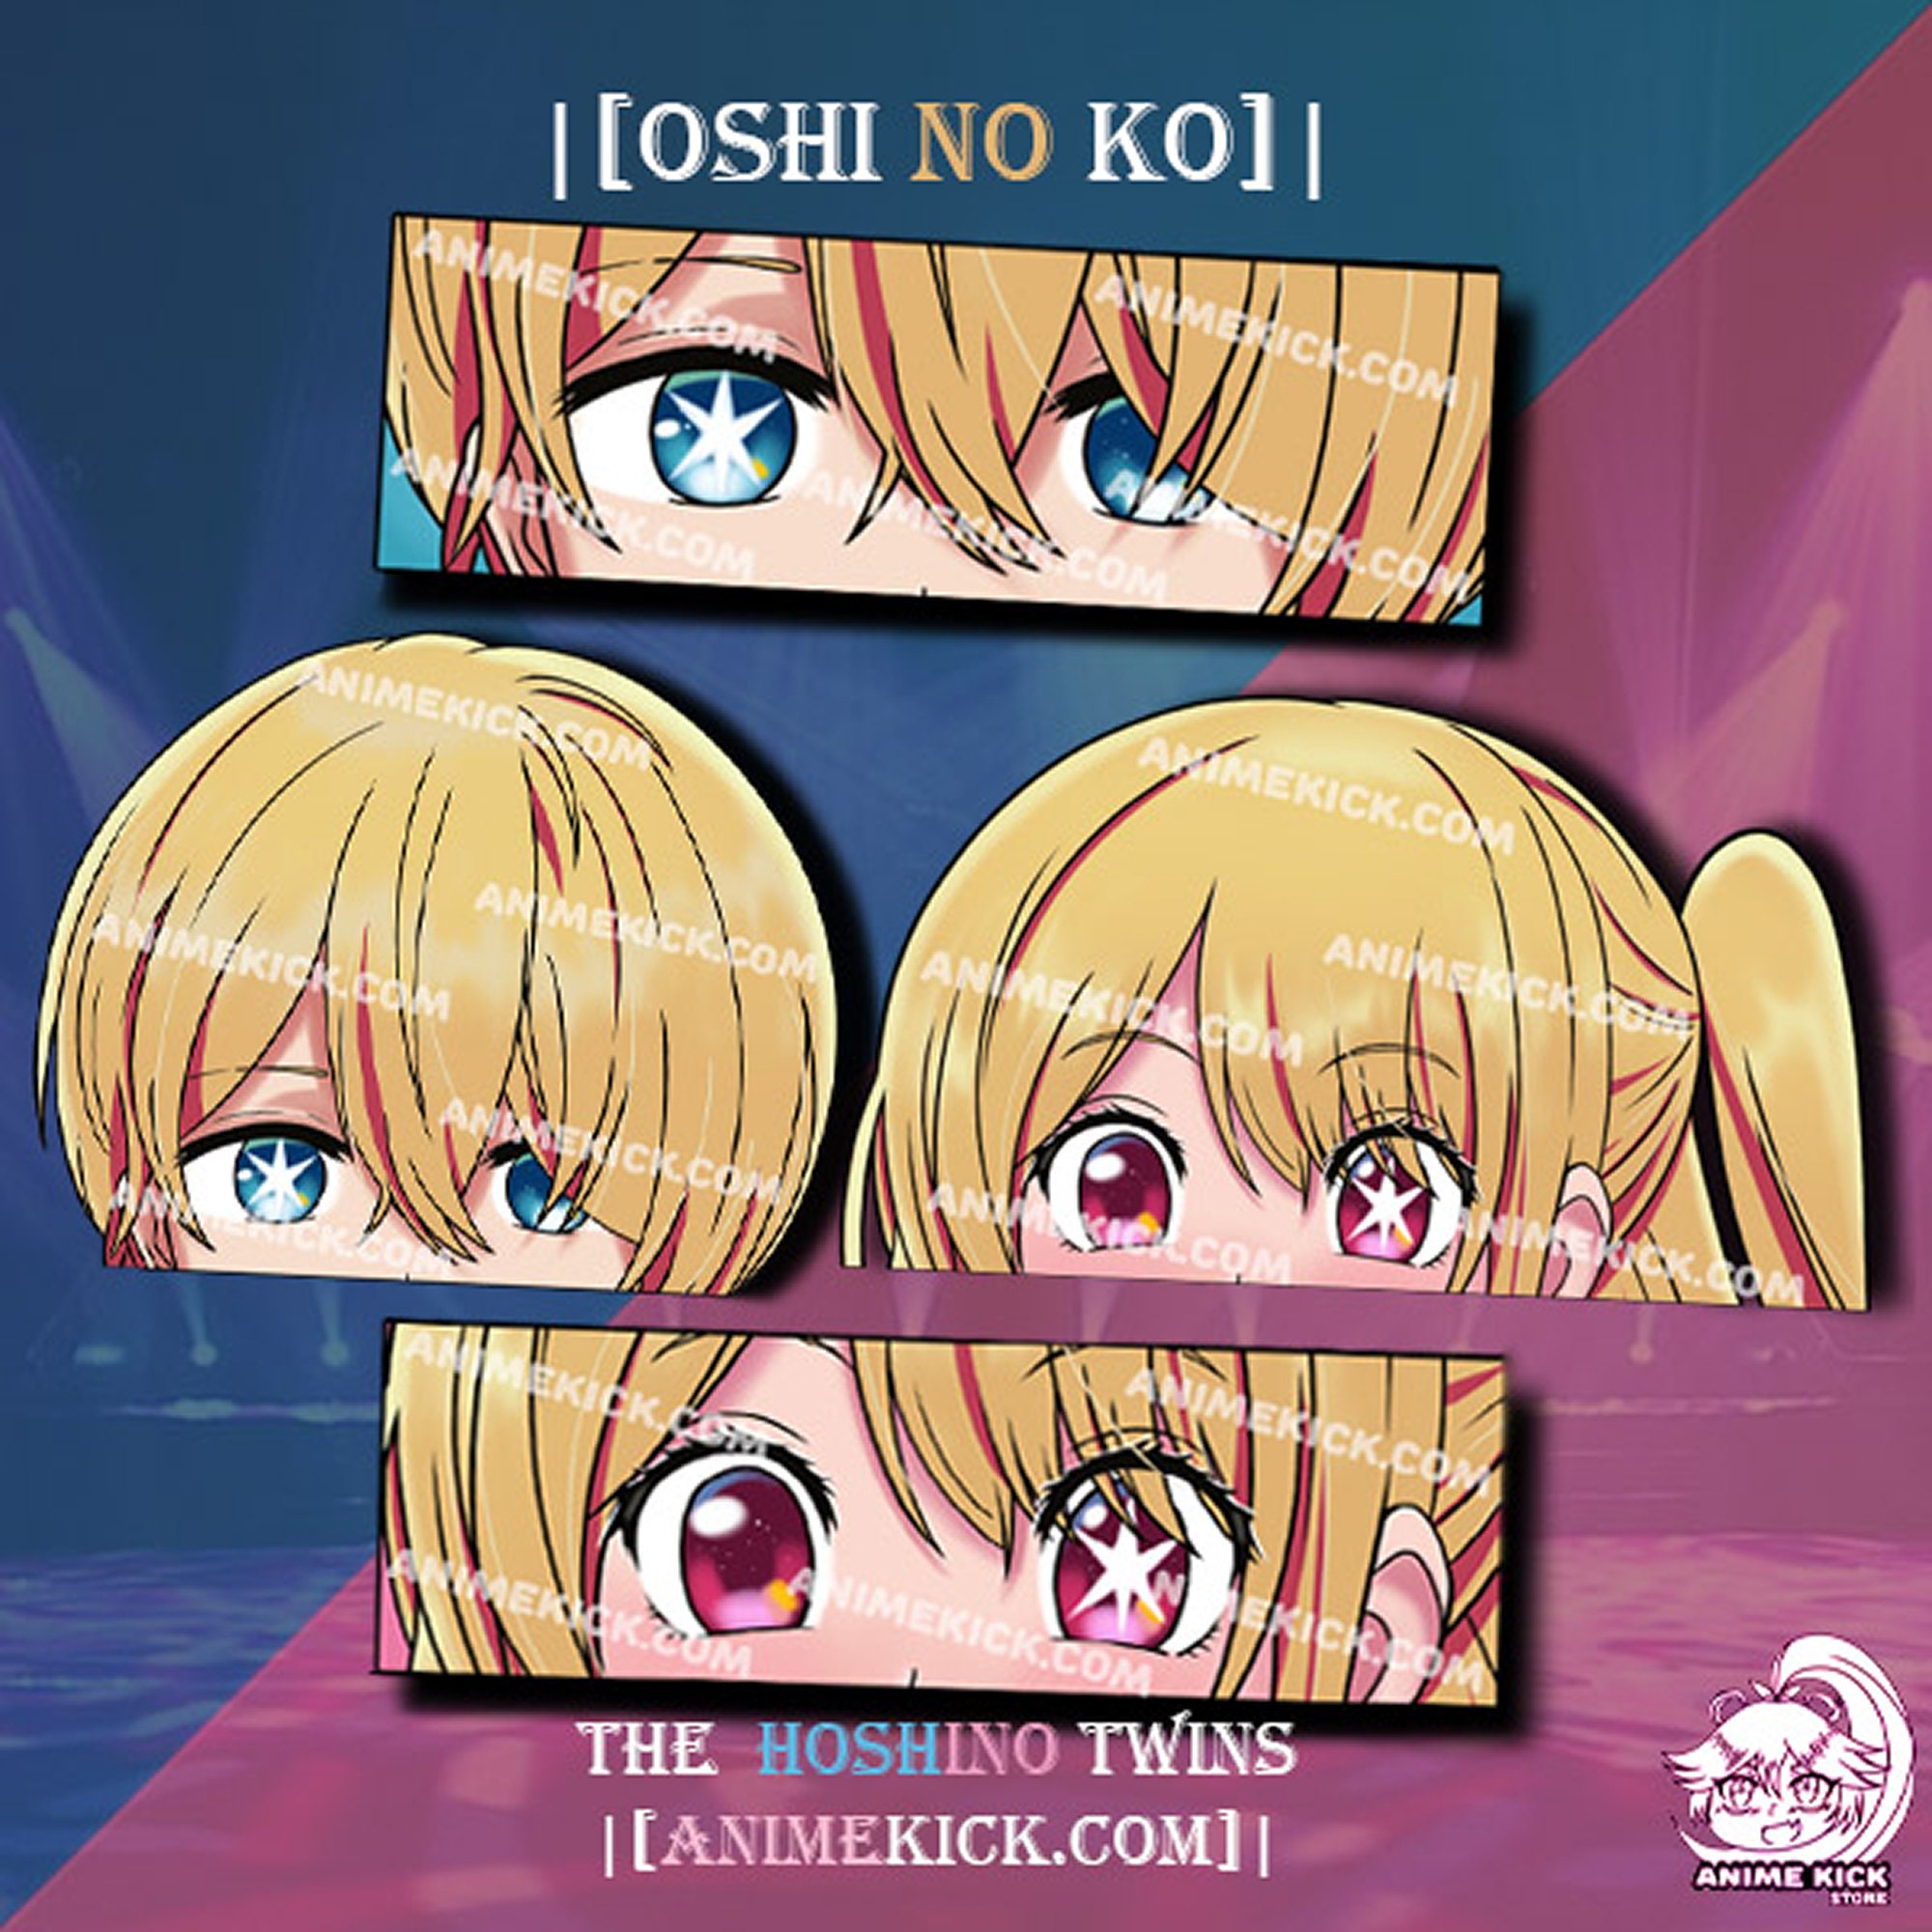 OSHI NO KO Anime Sticker